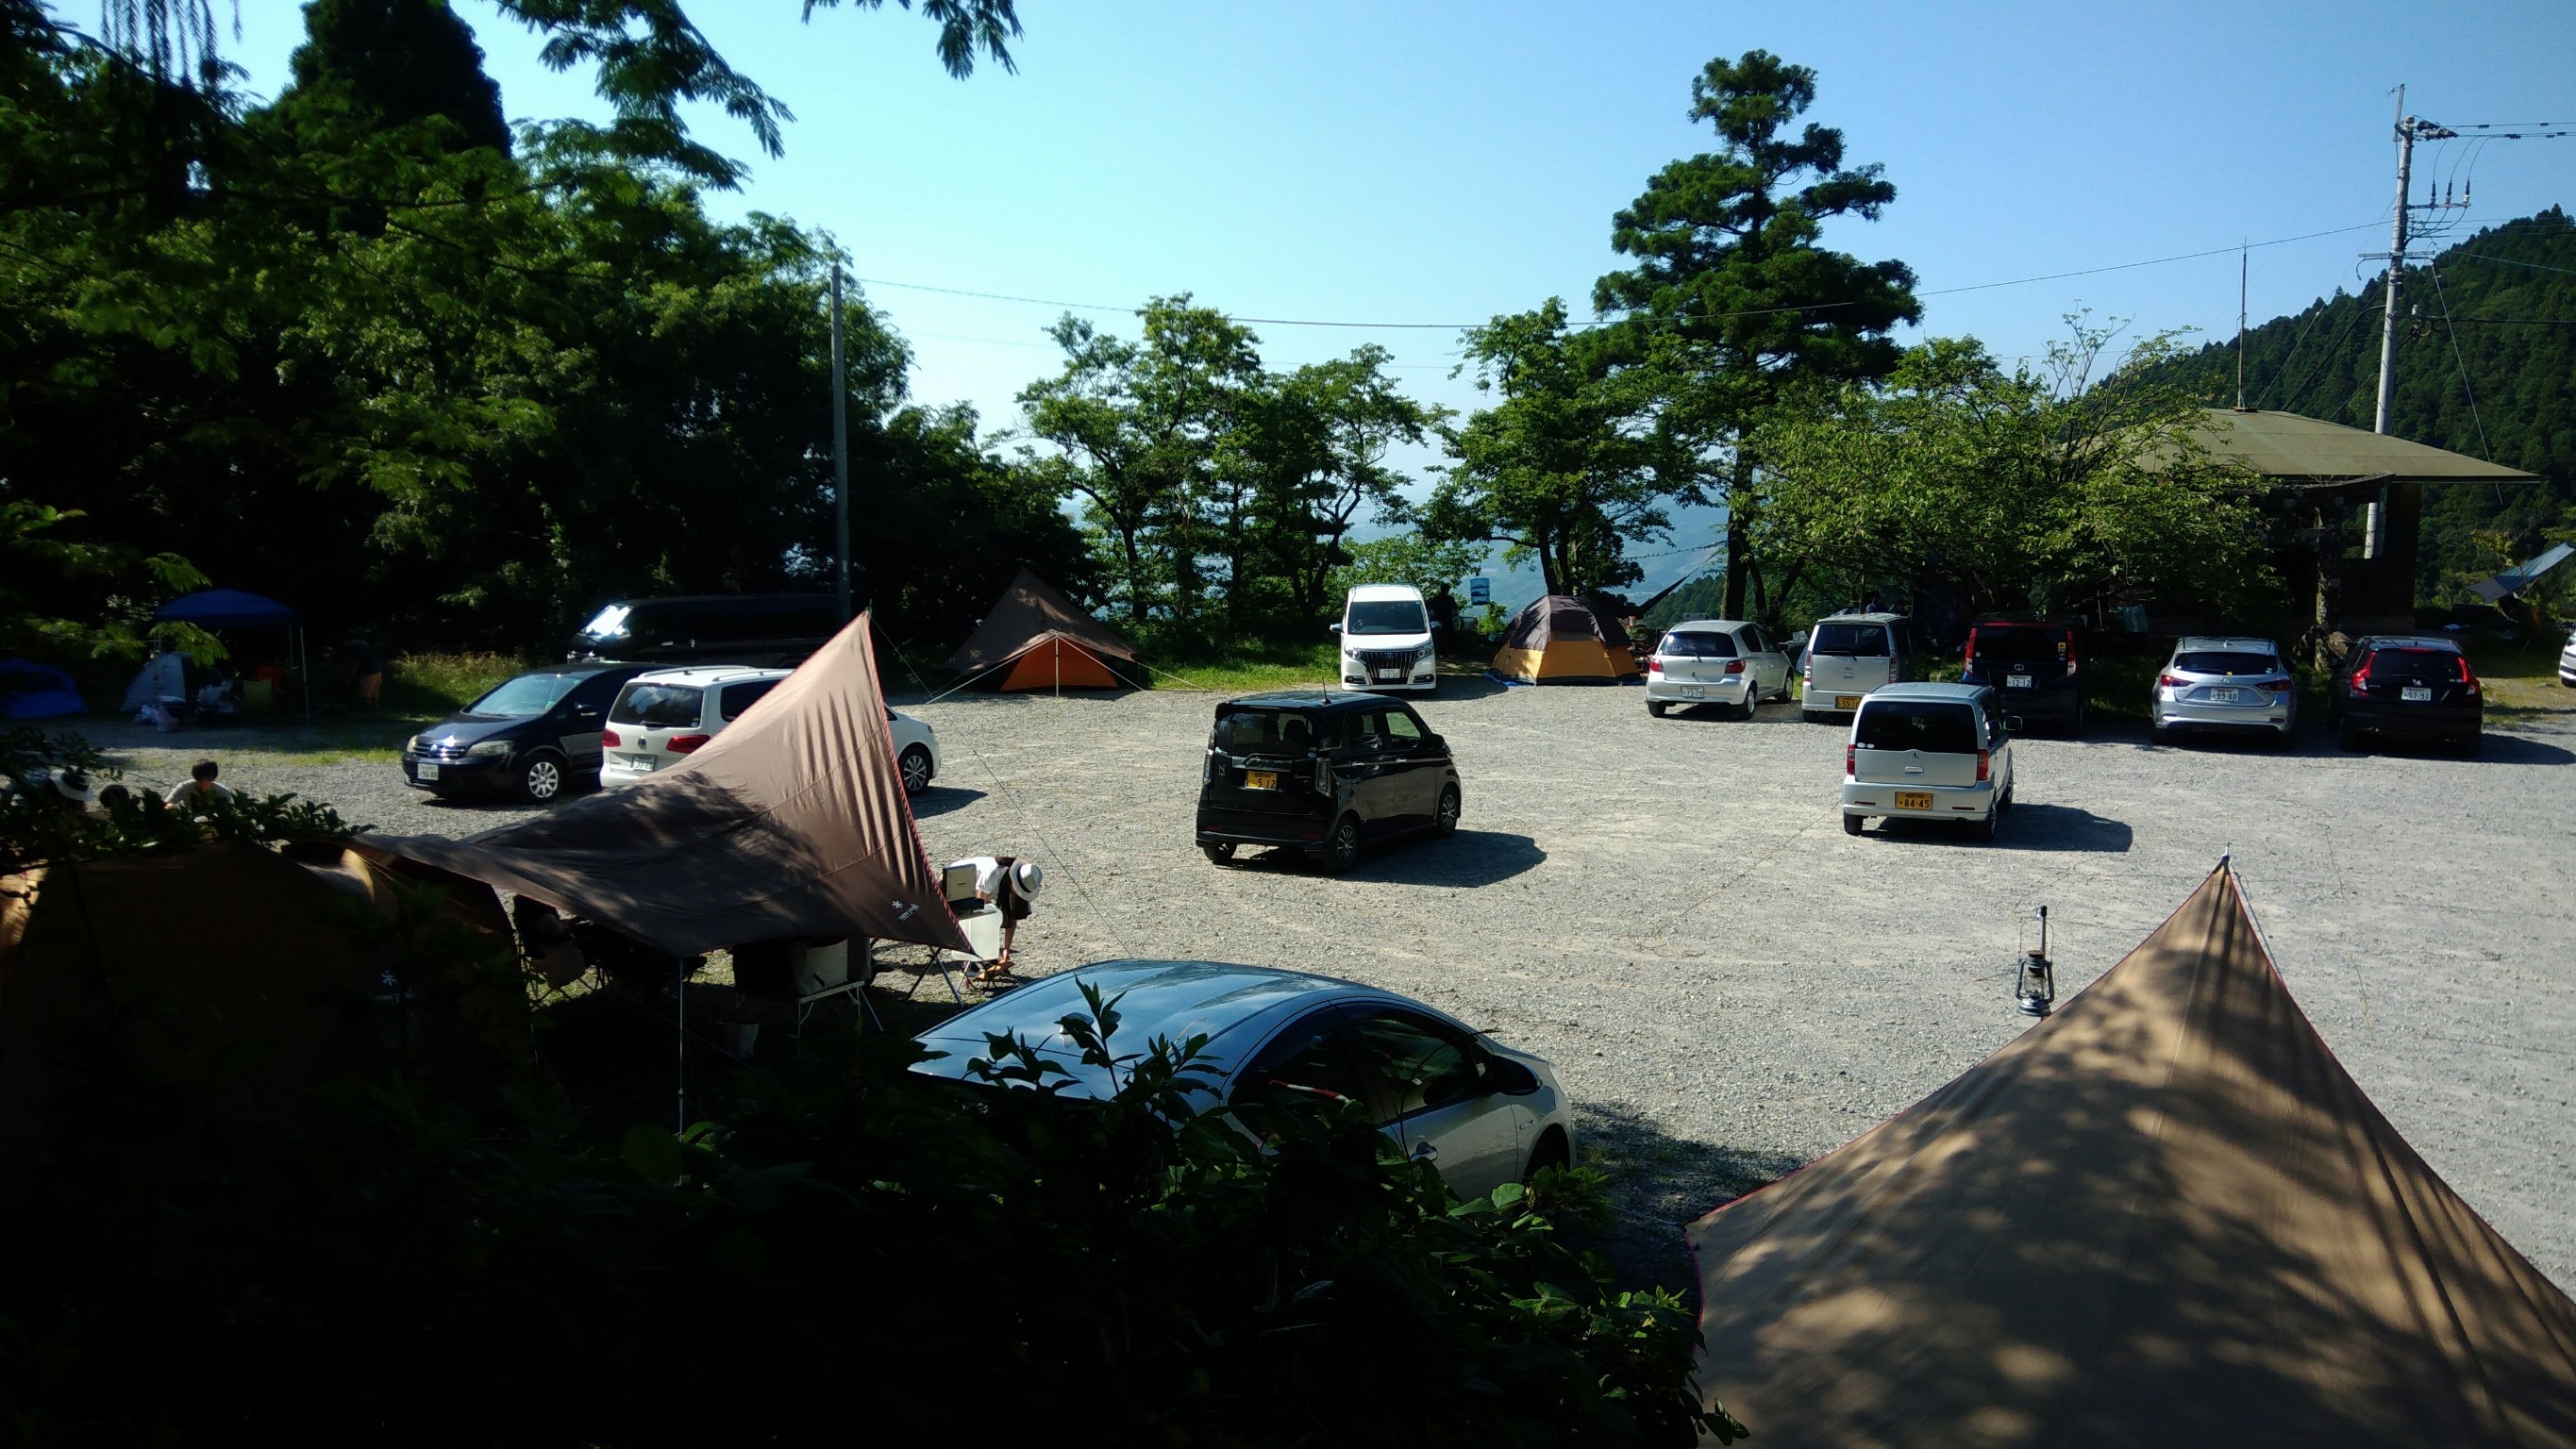 福岡 若杉楽園キャンプ場は無料 現在有料に変更 料金追記済 でオートキャンプが楽しめるぞ 九州 初心者でも気軽に家族で楽しめるキャンプ 場を紹介するブログ